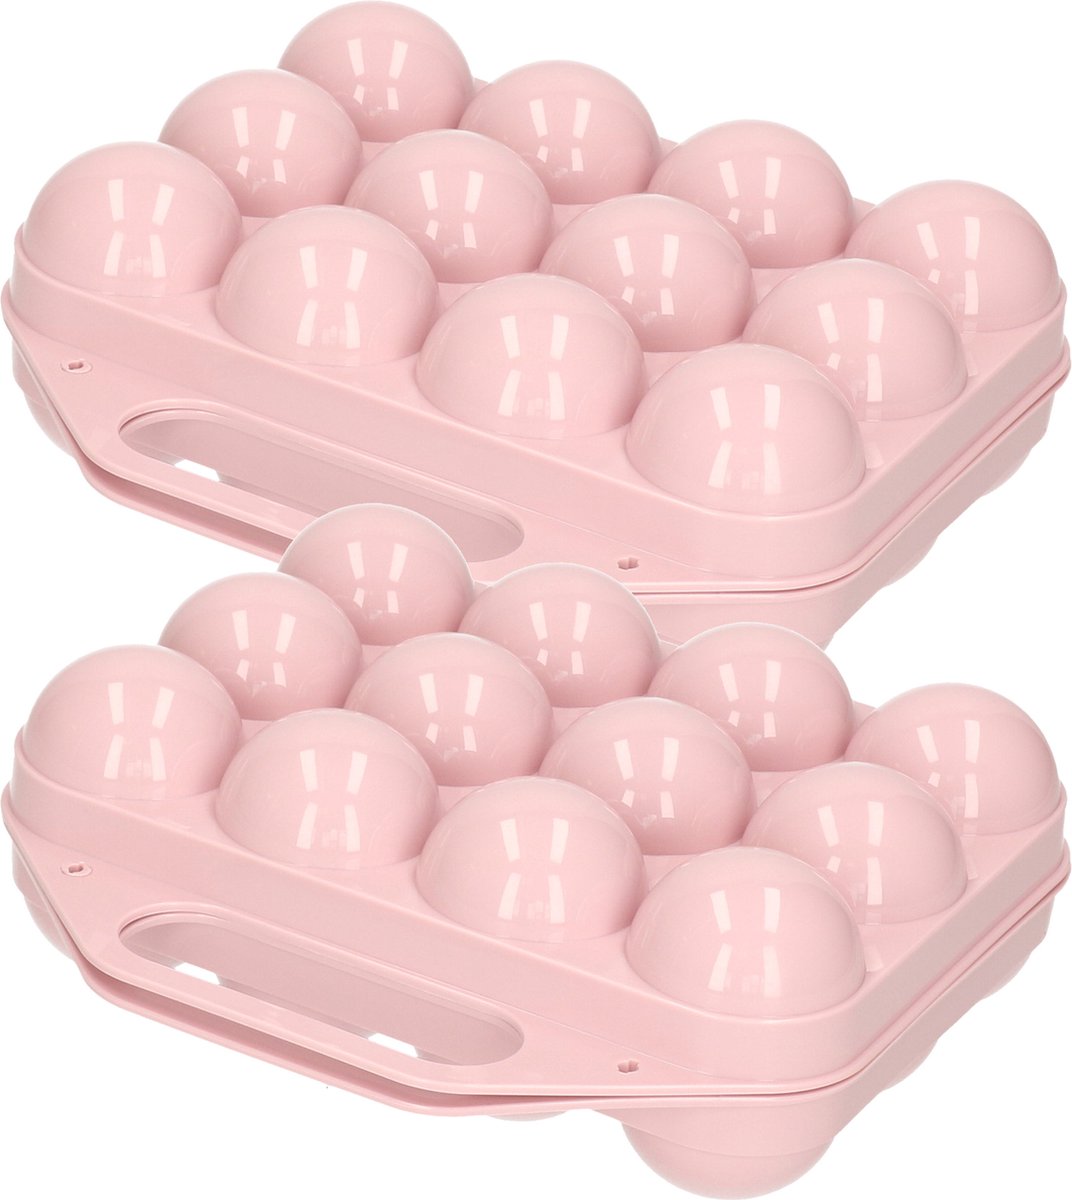 Plasticforte Eierdoos - 2x - koelkast organizer eierhouder - 12 eieren - licht roze - kunststof - 20 x 19 cm